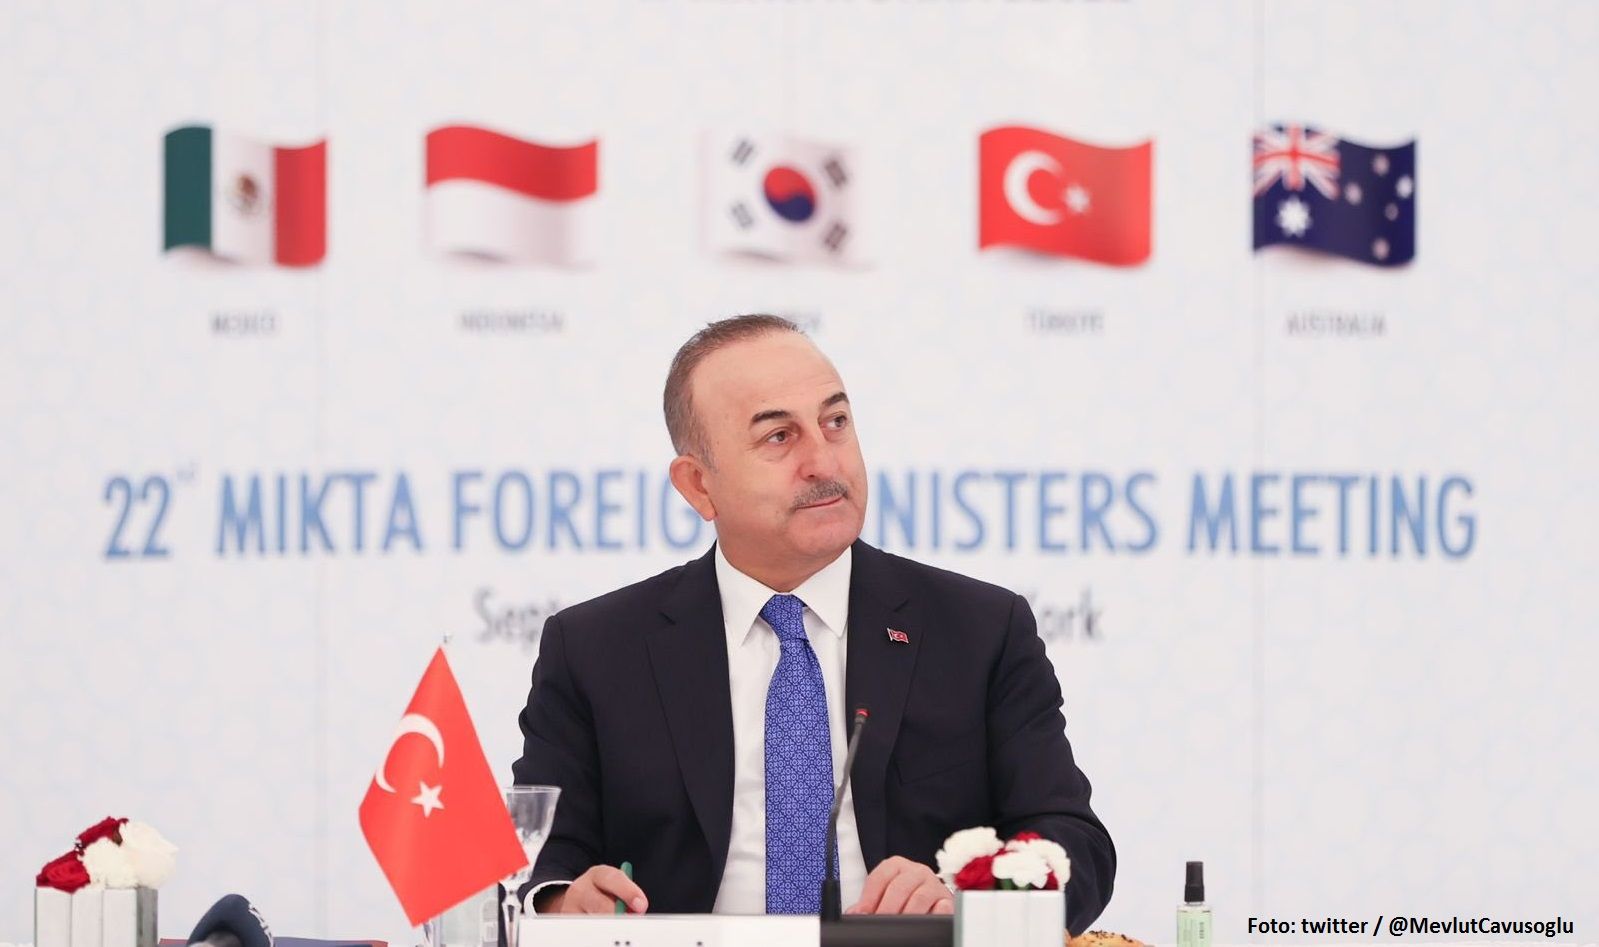 Türkiye unternimmt Schritte zur Wiederherstellung der Seidenstraße gemeinsam mit Aserbaidschan - Außenminister